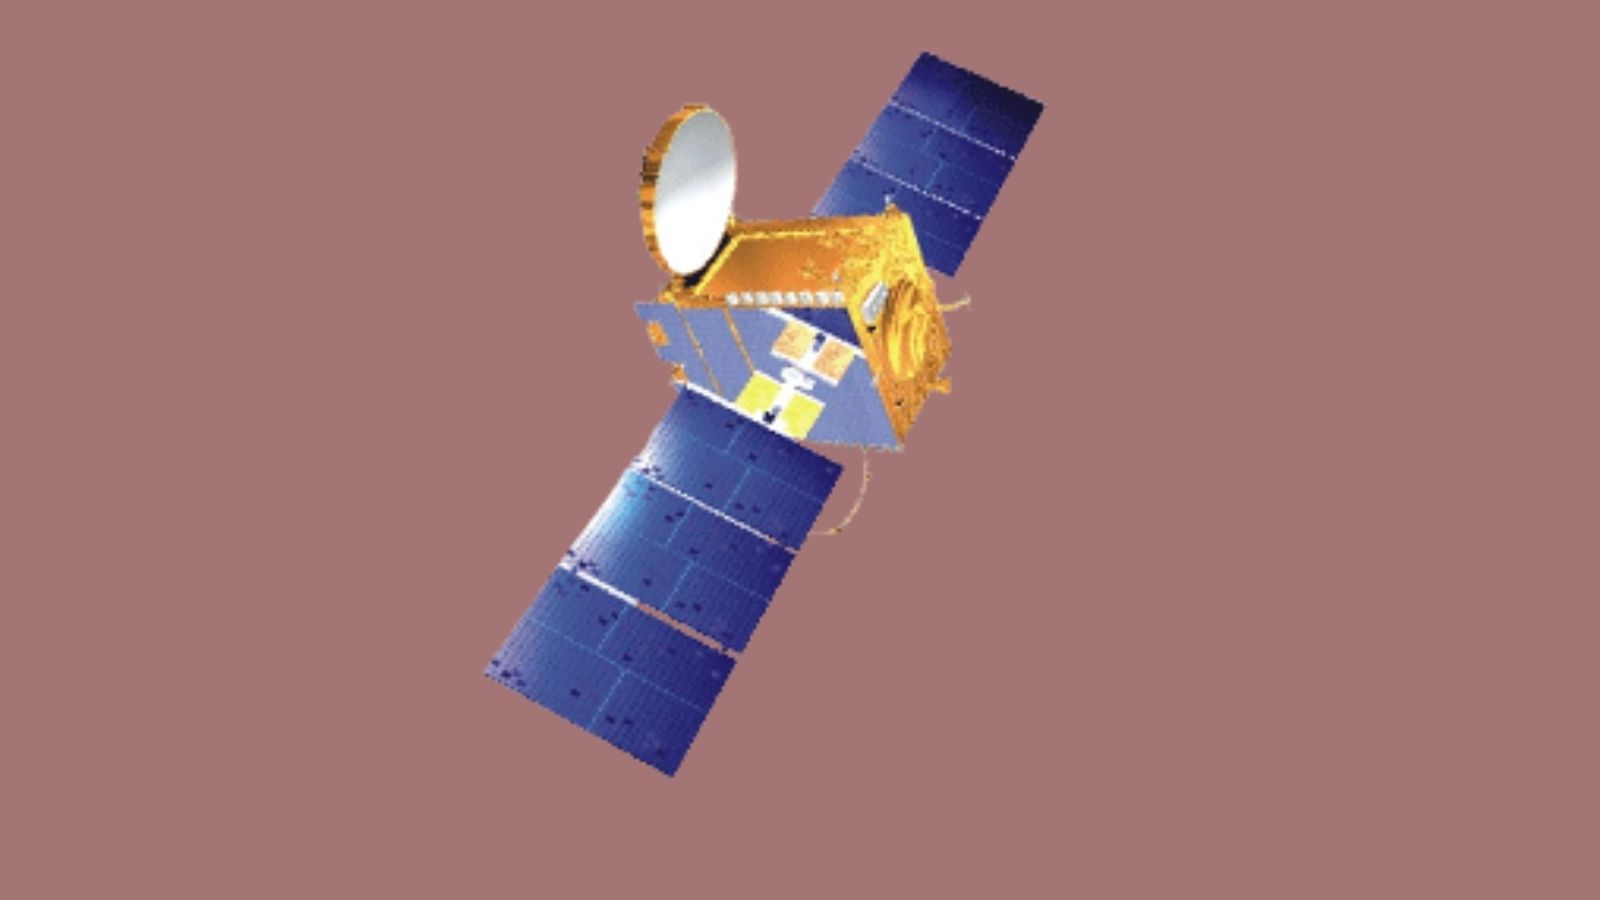 Индийское космическое агентство успешно вывело из эксплуатации спутник INSAT-4B